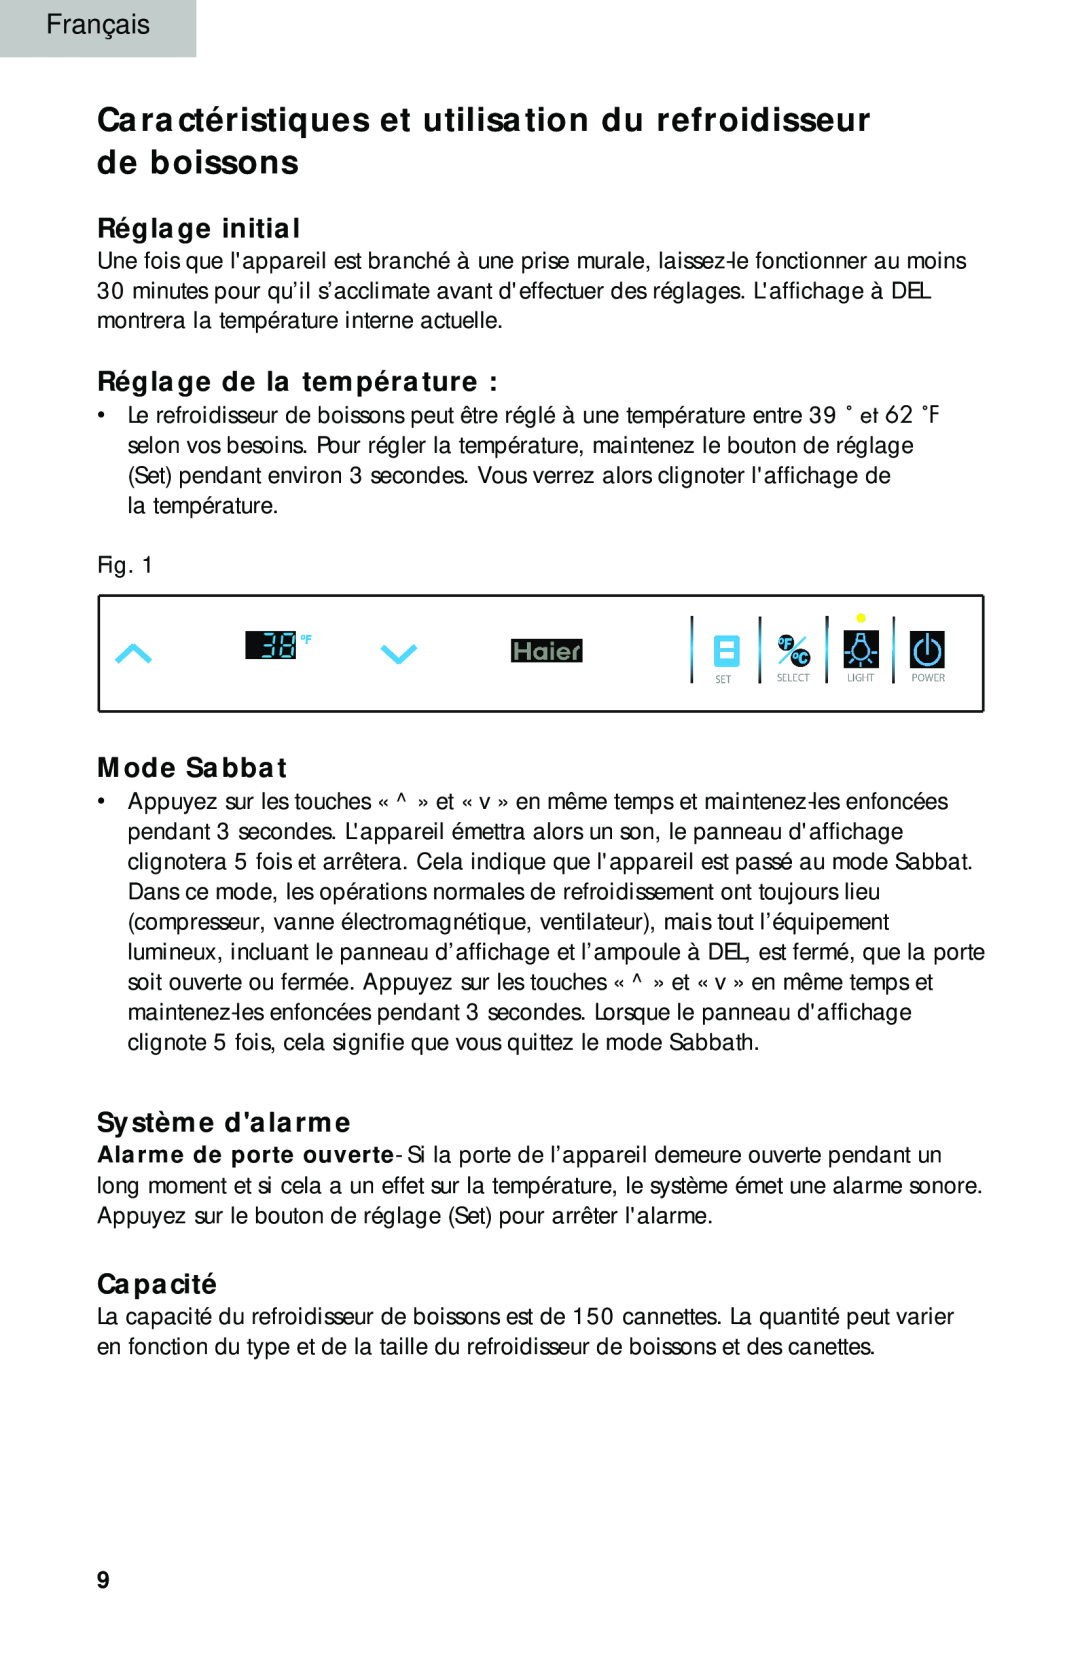 Haier BC100GS manual Réglage initial, Réglage de la température, Mode Sabbat, Système dalarme, Capacité 